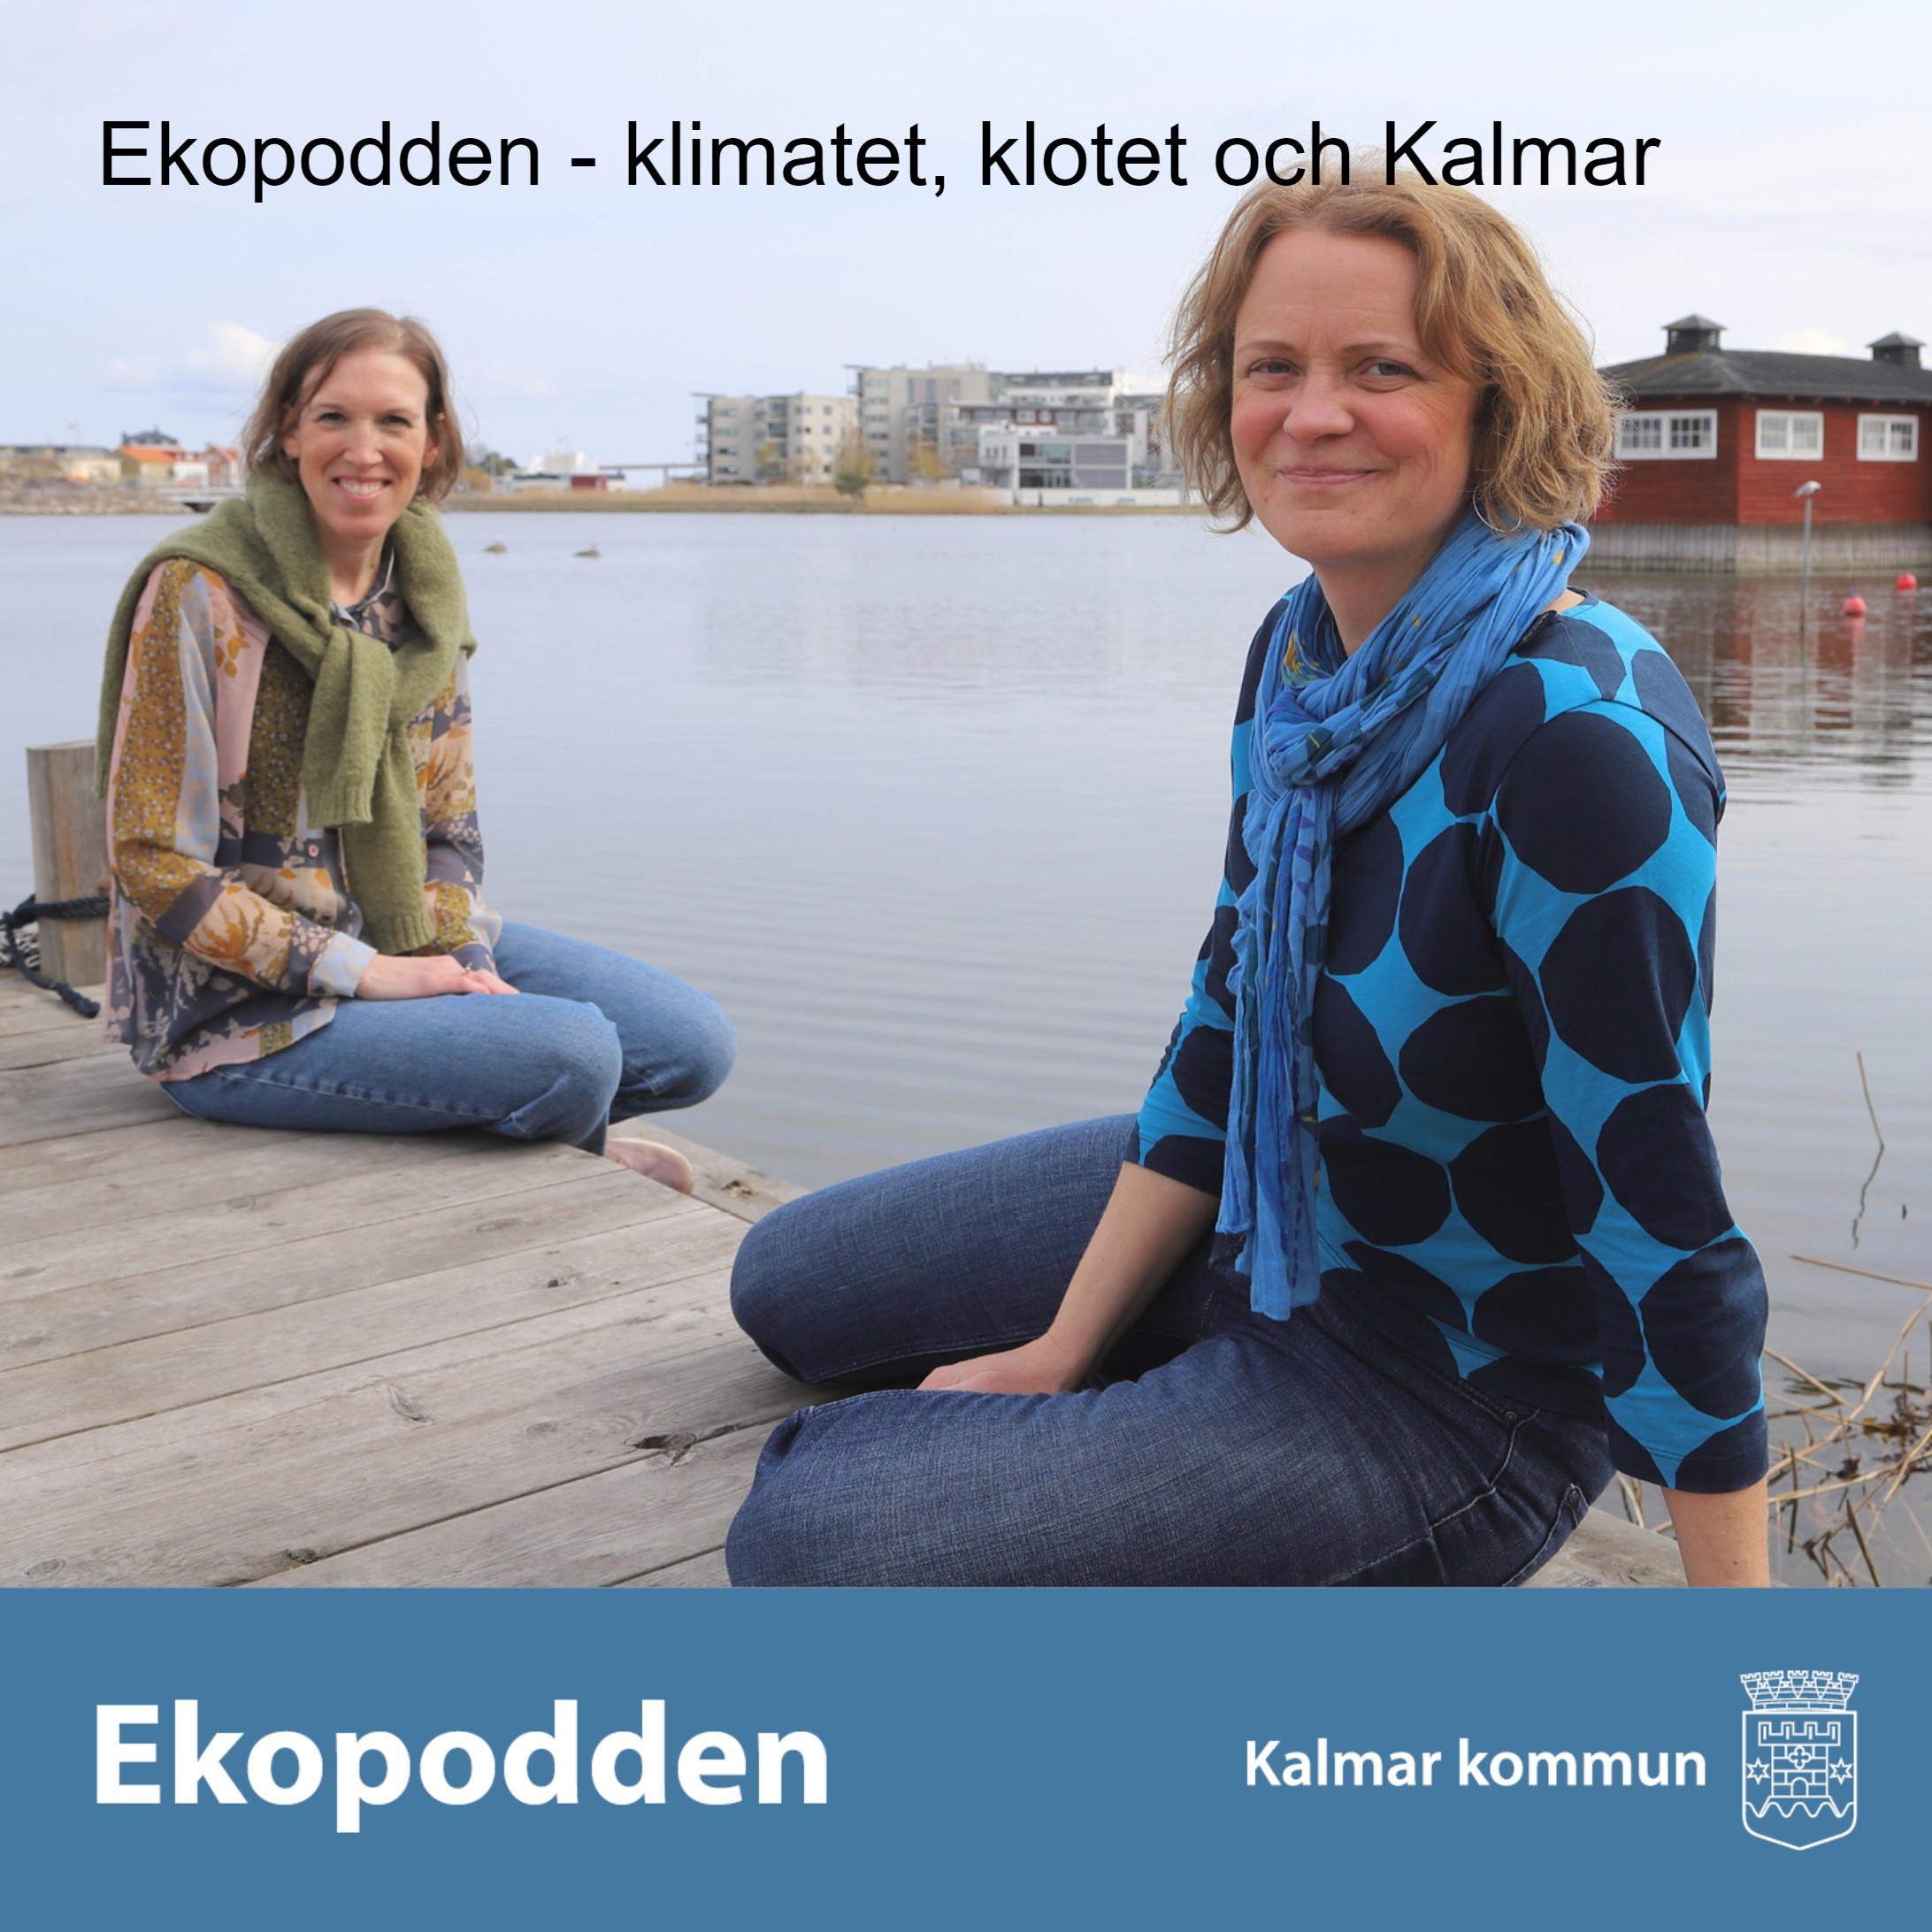 Ekopodden - klimatet, klotet och Kalmar